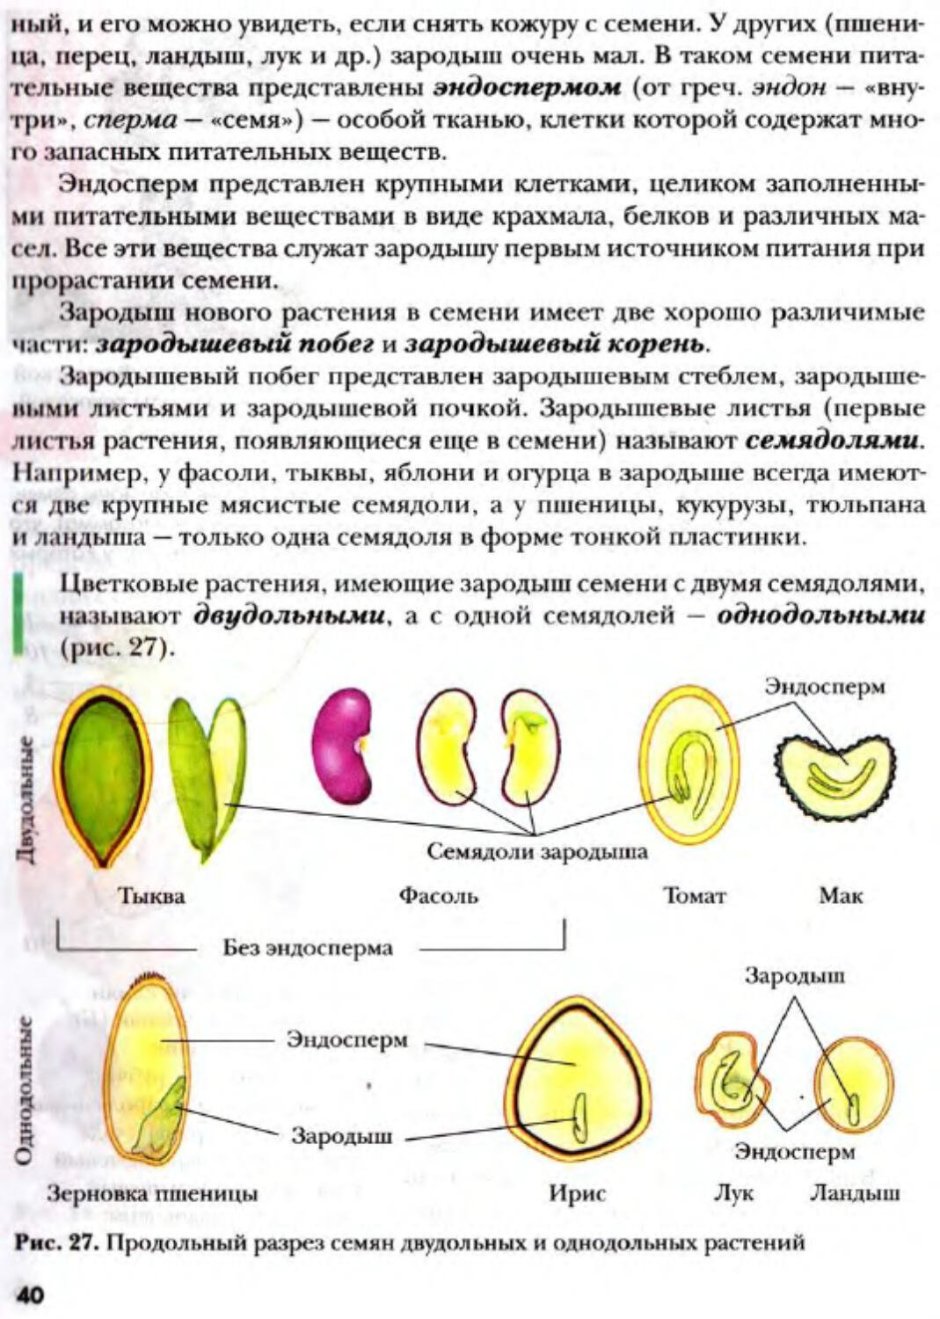 Семена двудольных растений с эндоспермом